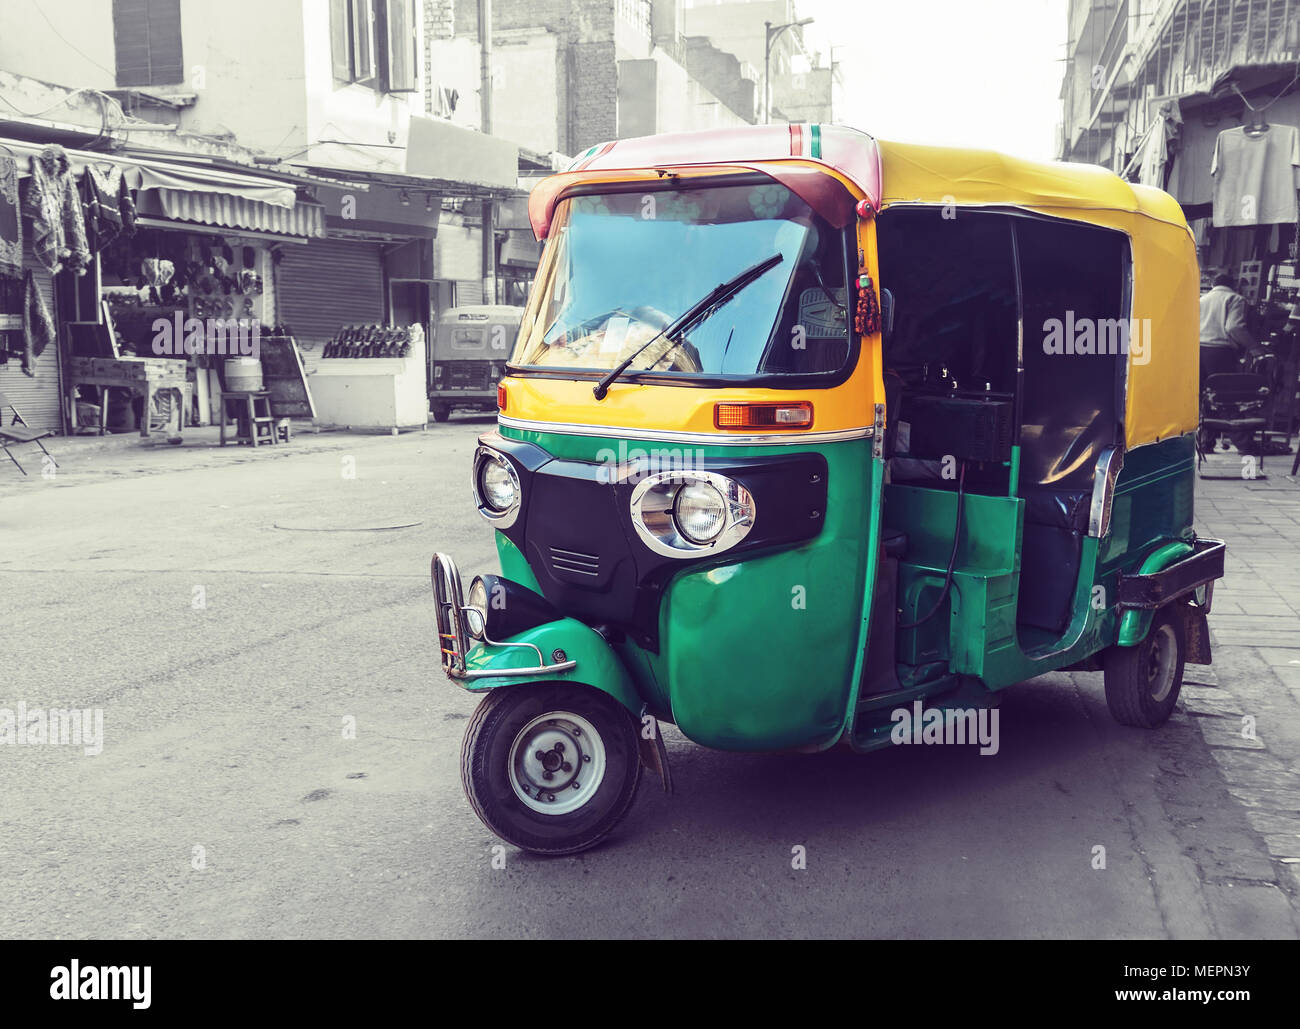 Jaune Vert traditionnel tuk tuk taxi sur la rue. Transports publics indiens dans les rues de New Delhi. Banque D'Images